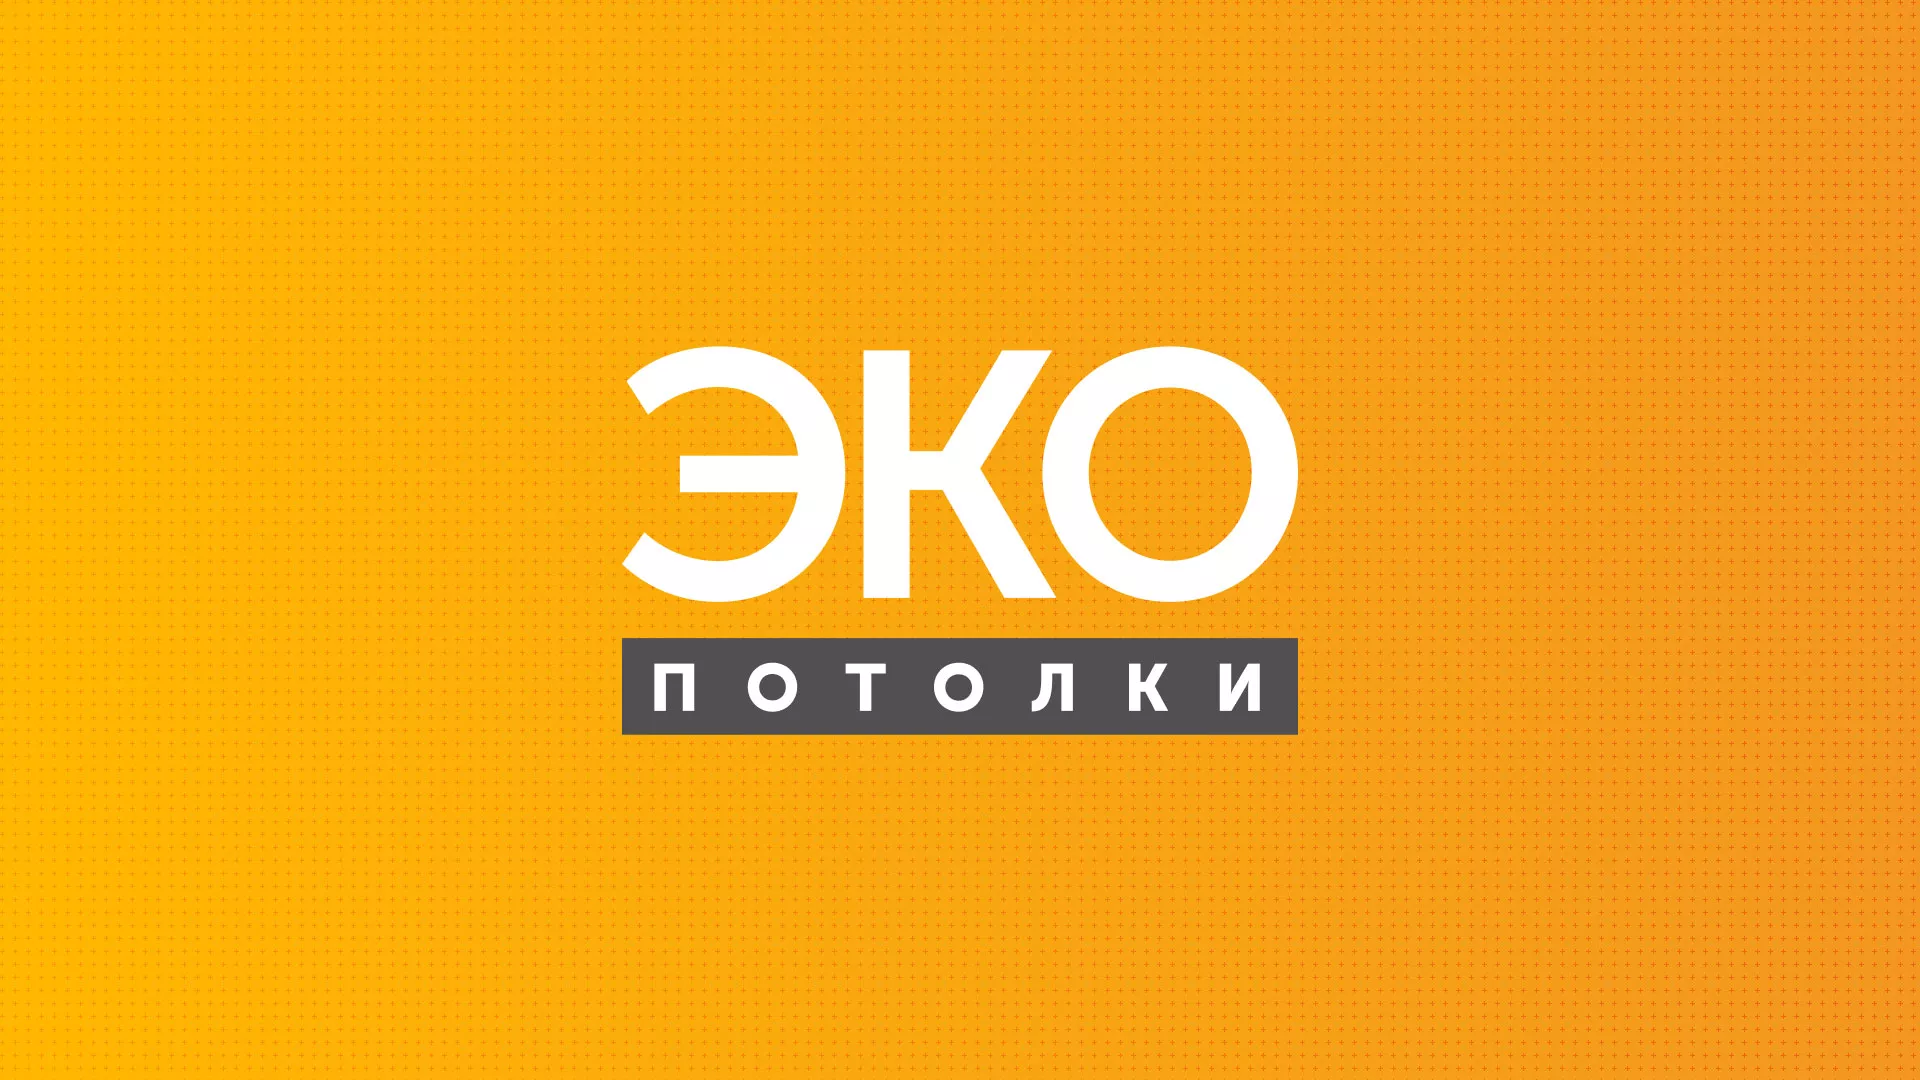 Разработка сайта по натяжным потолкам «Эко Потолки» в Жуковском